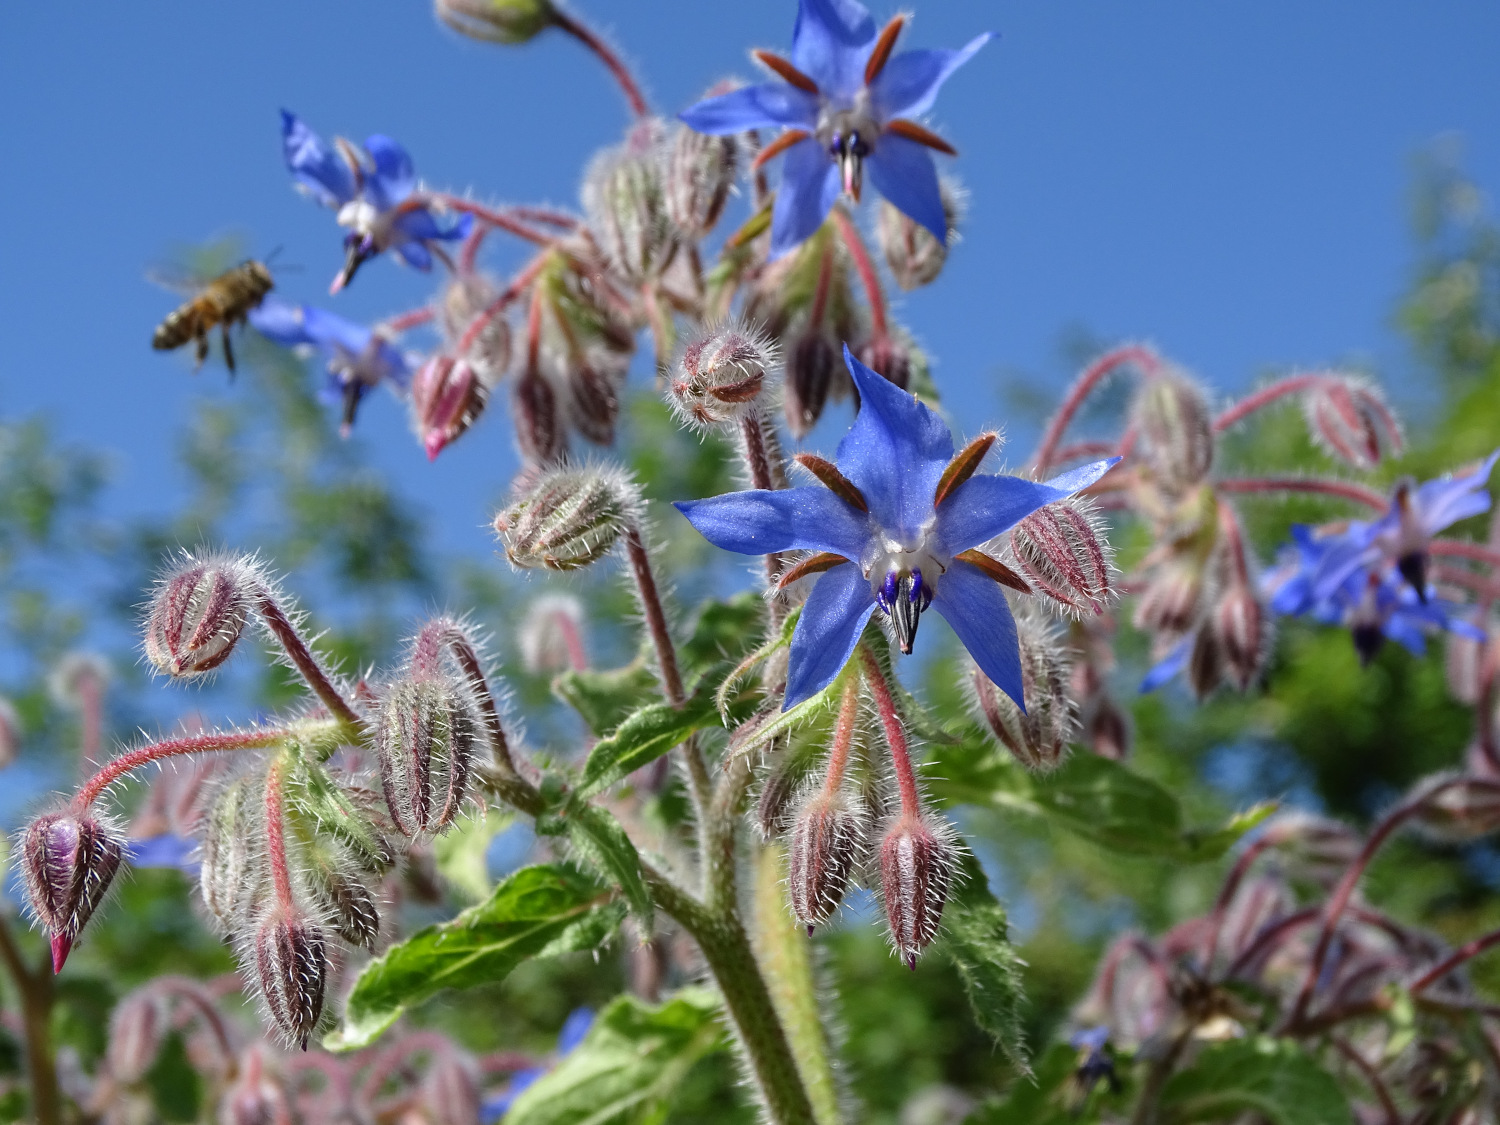 Plante médicinale : la bourrache, petite fleur bleue qui rend heureux